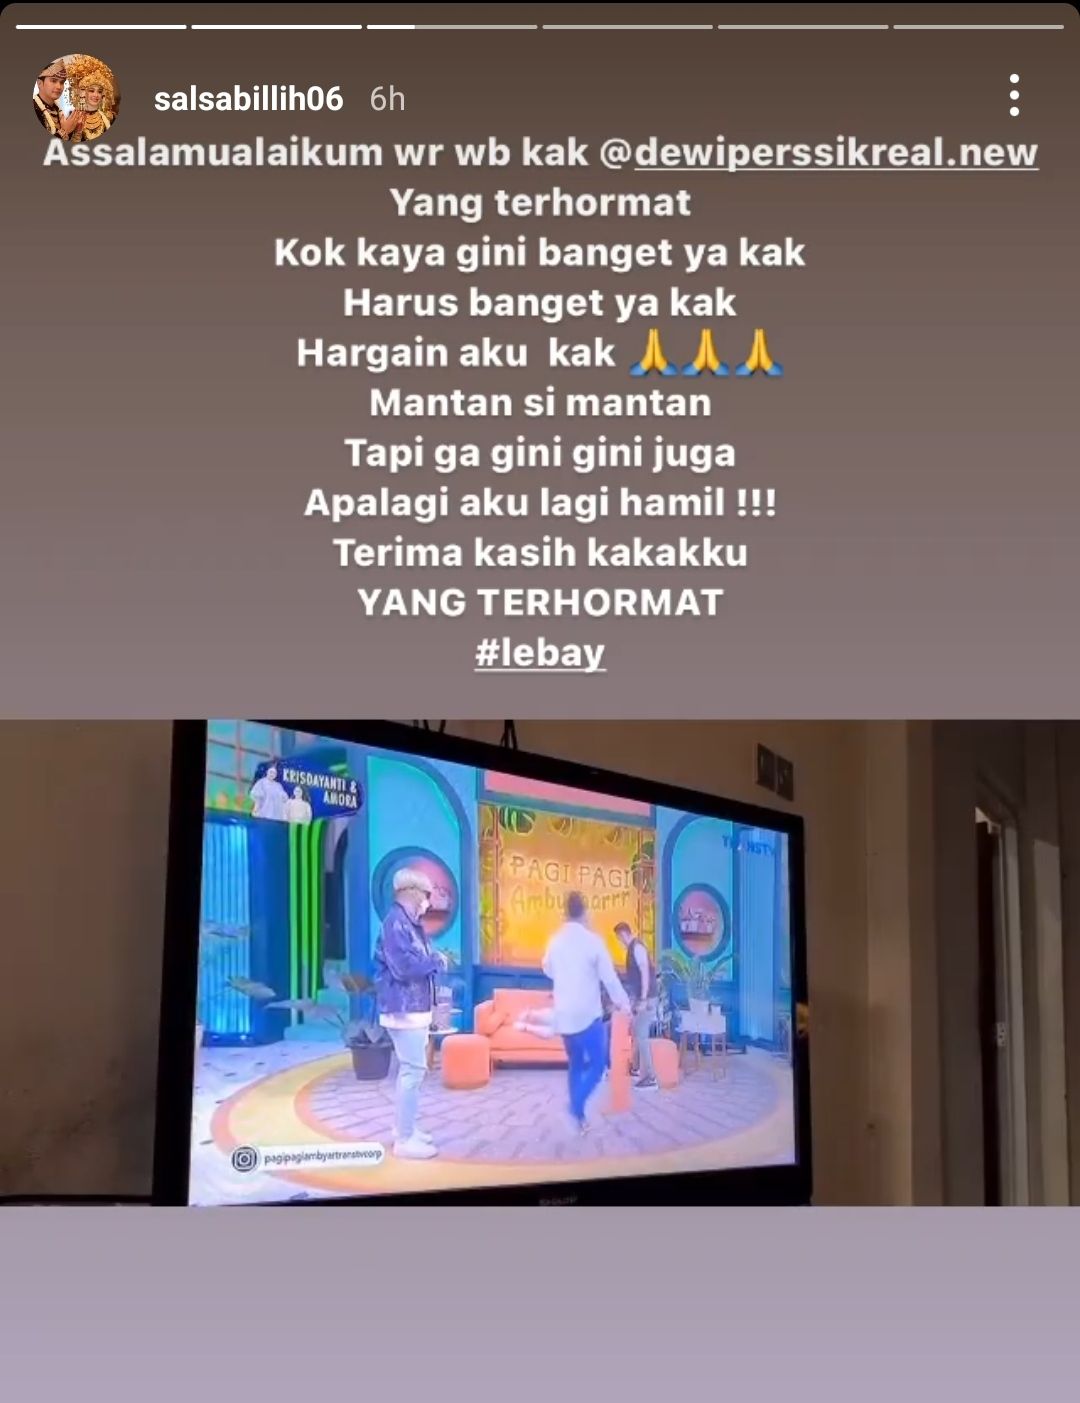 Salsabillih, istri Aldi Taher, curhat di media sosial soal Dewi Persik. 